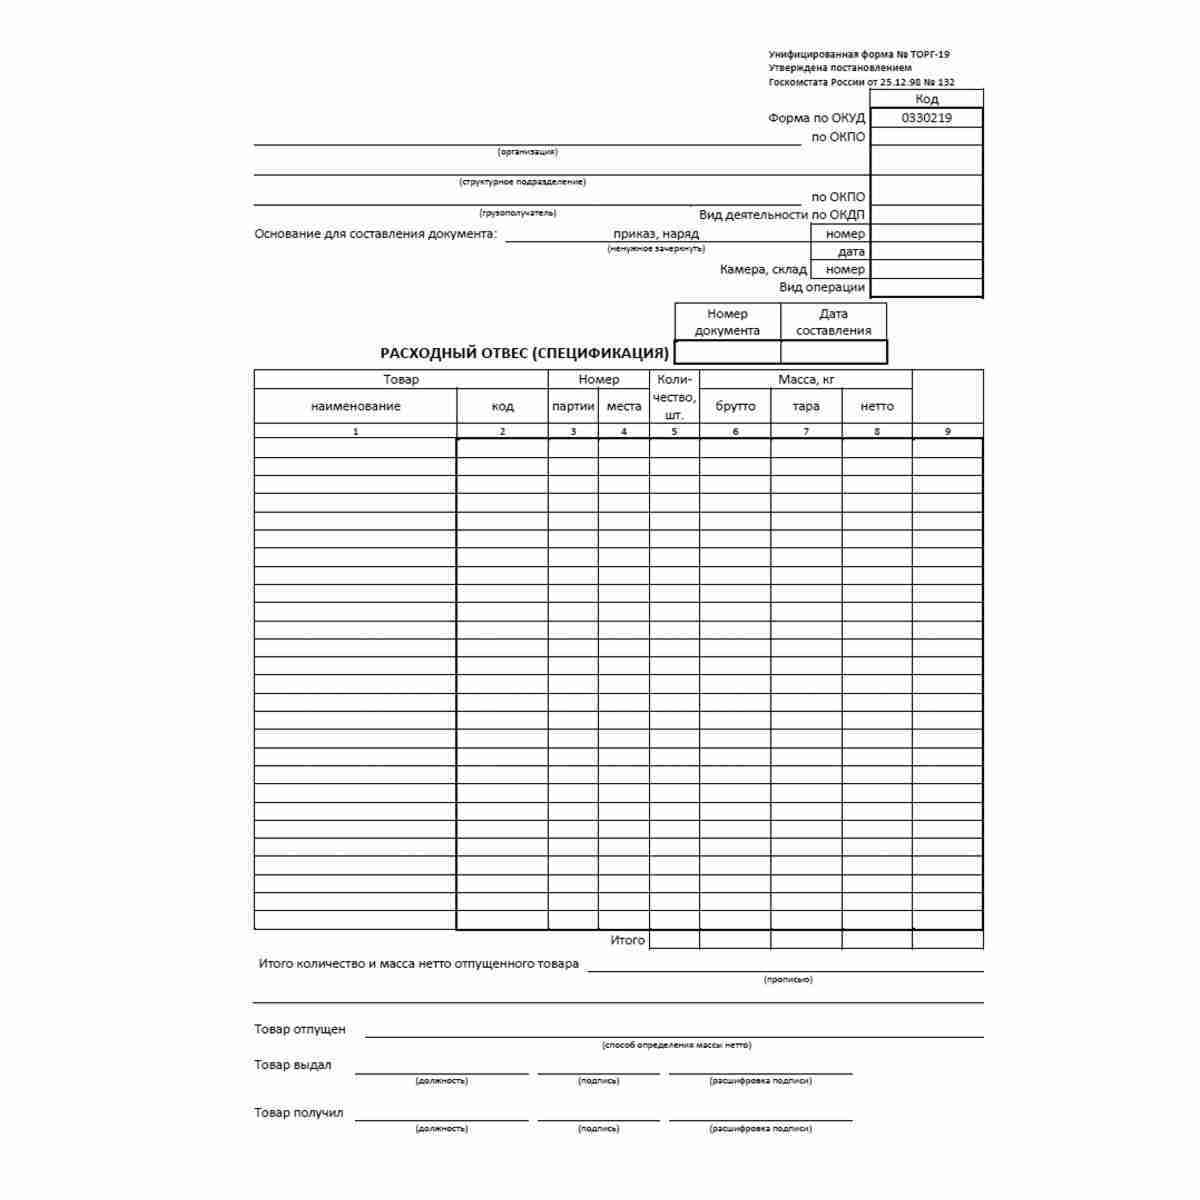 Унифицированная форма первичной учетной документации №ТОРГ-19 "Расходный отвес (спецификация)" (ОКУД 0330219)